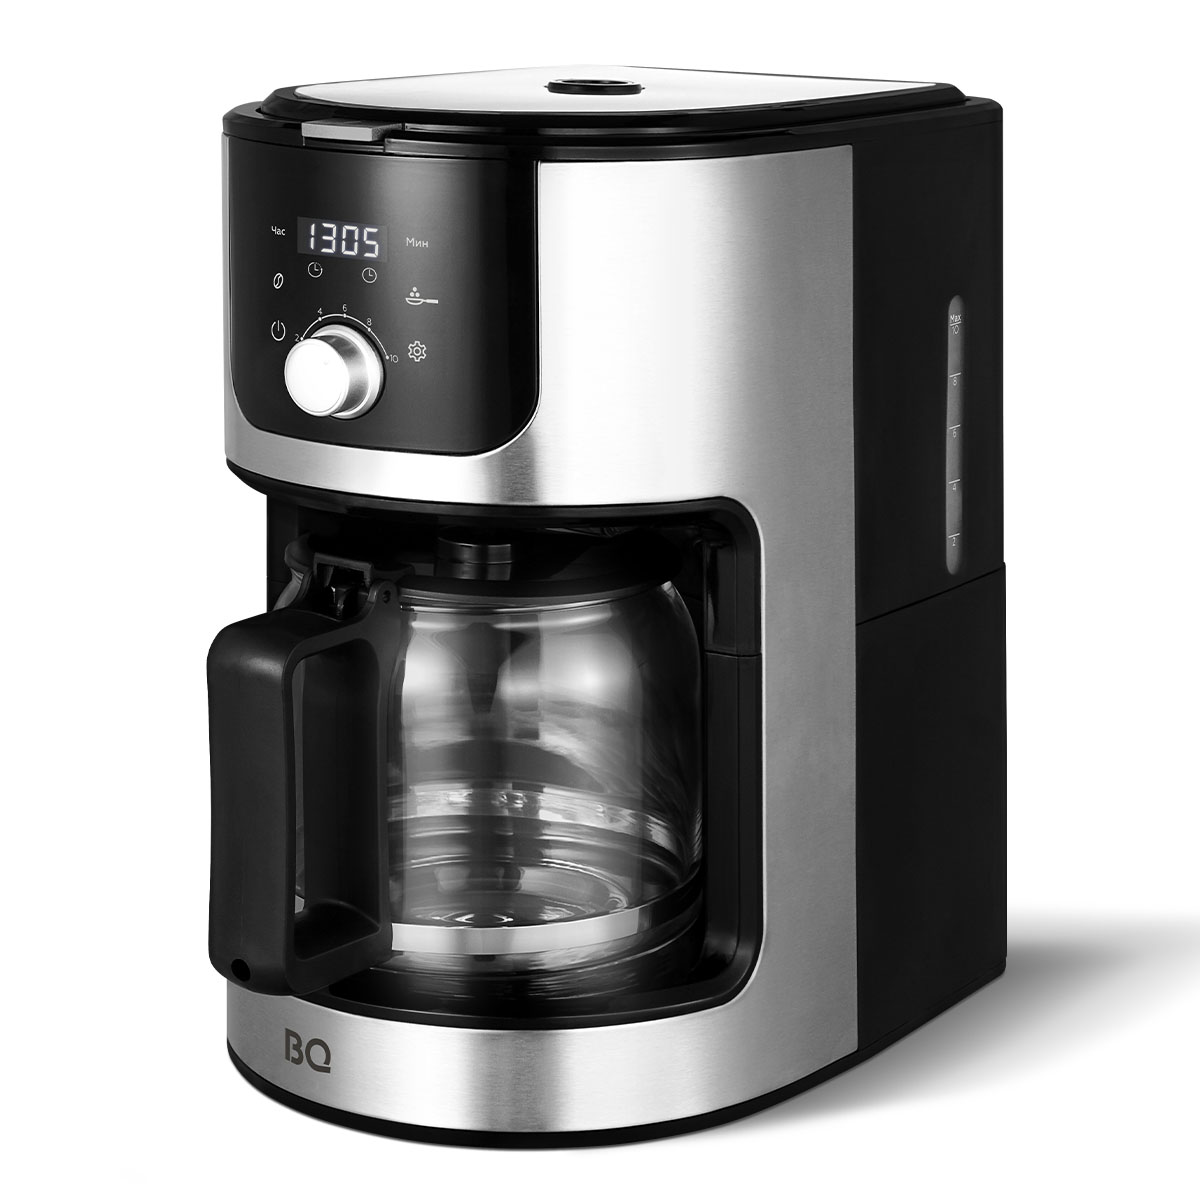 Кофеварка капельного типа BQ CM1010 серебристый, черный кофеварка капельного типа bq cm7002 серебристый